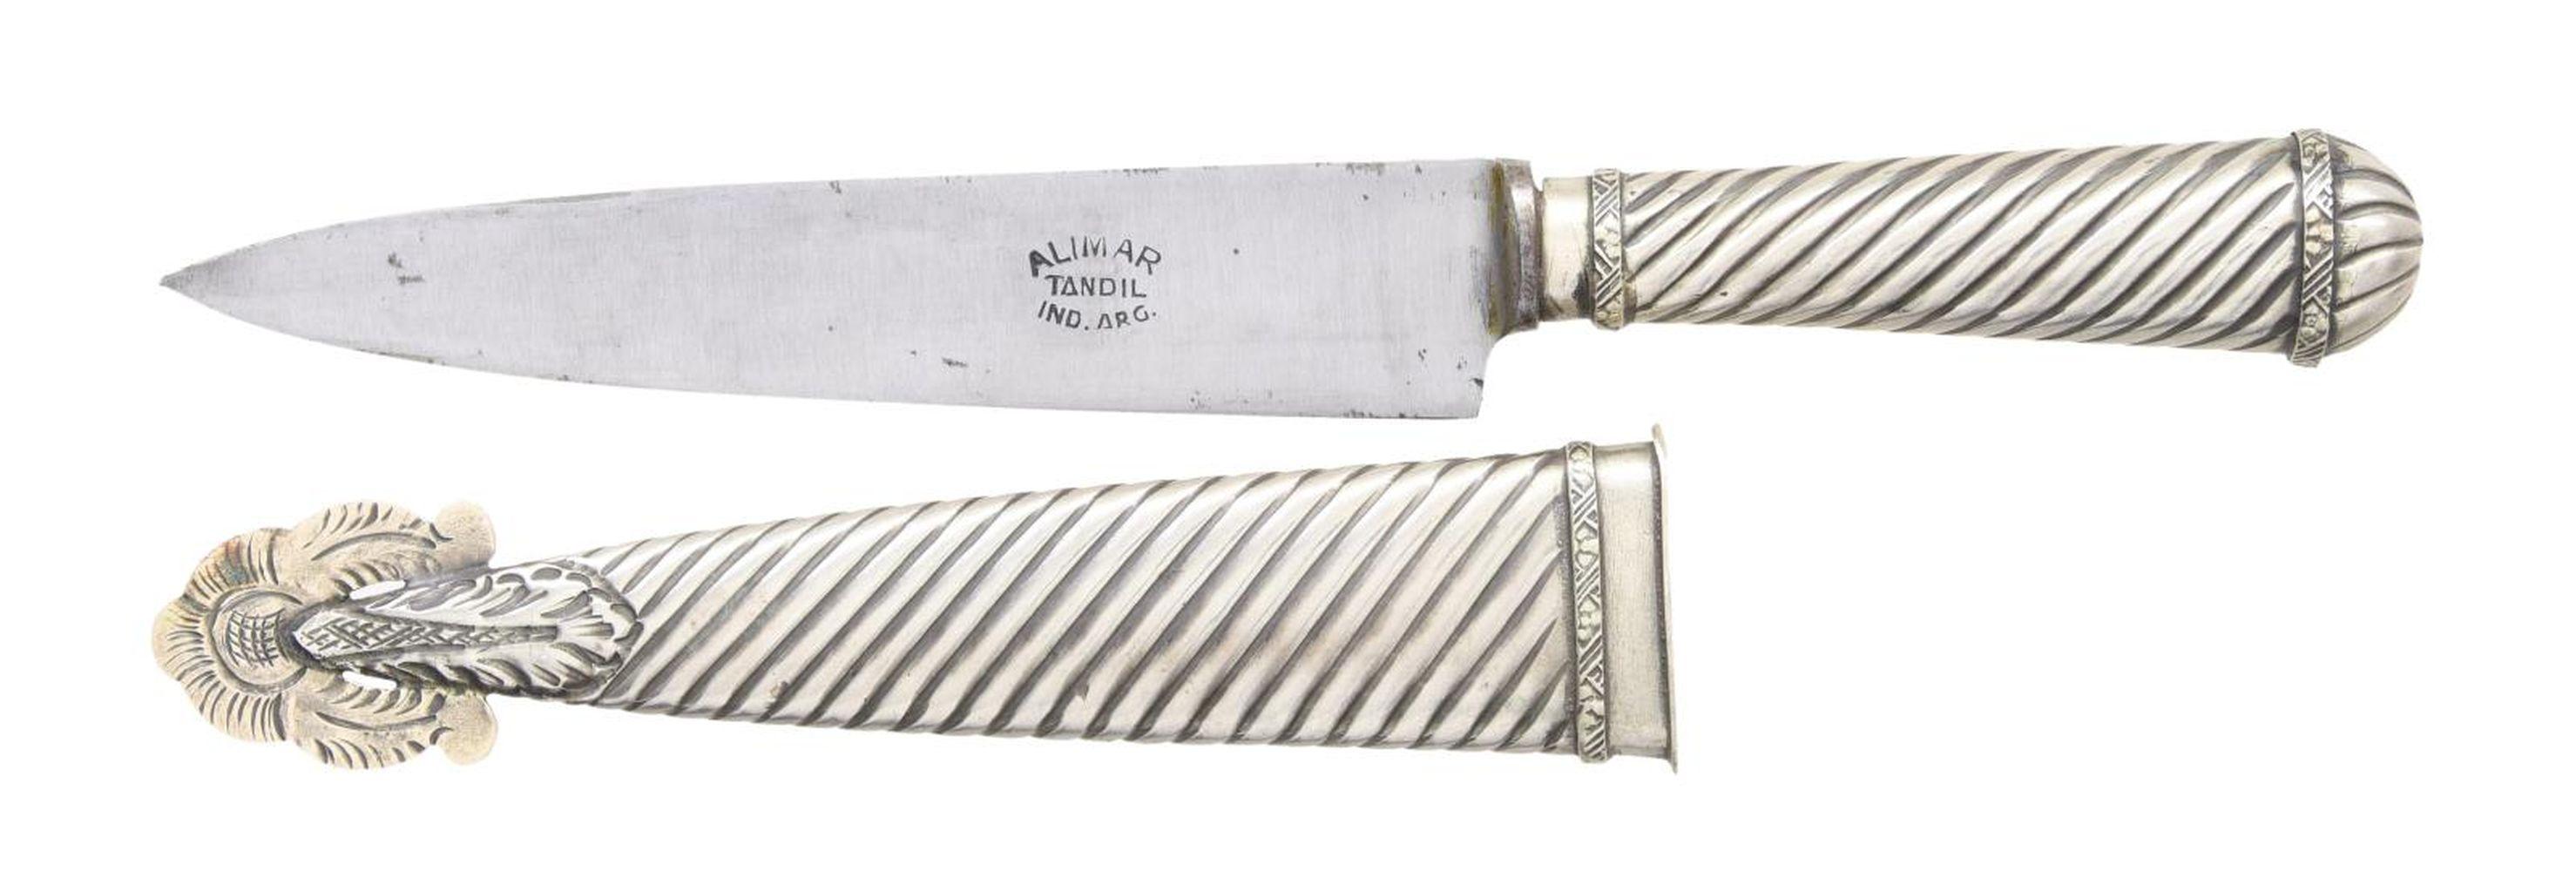 SOUTH AMERICAN GAUCHO KNIFE.